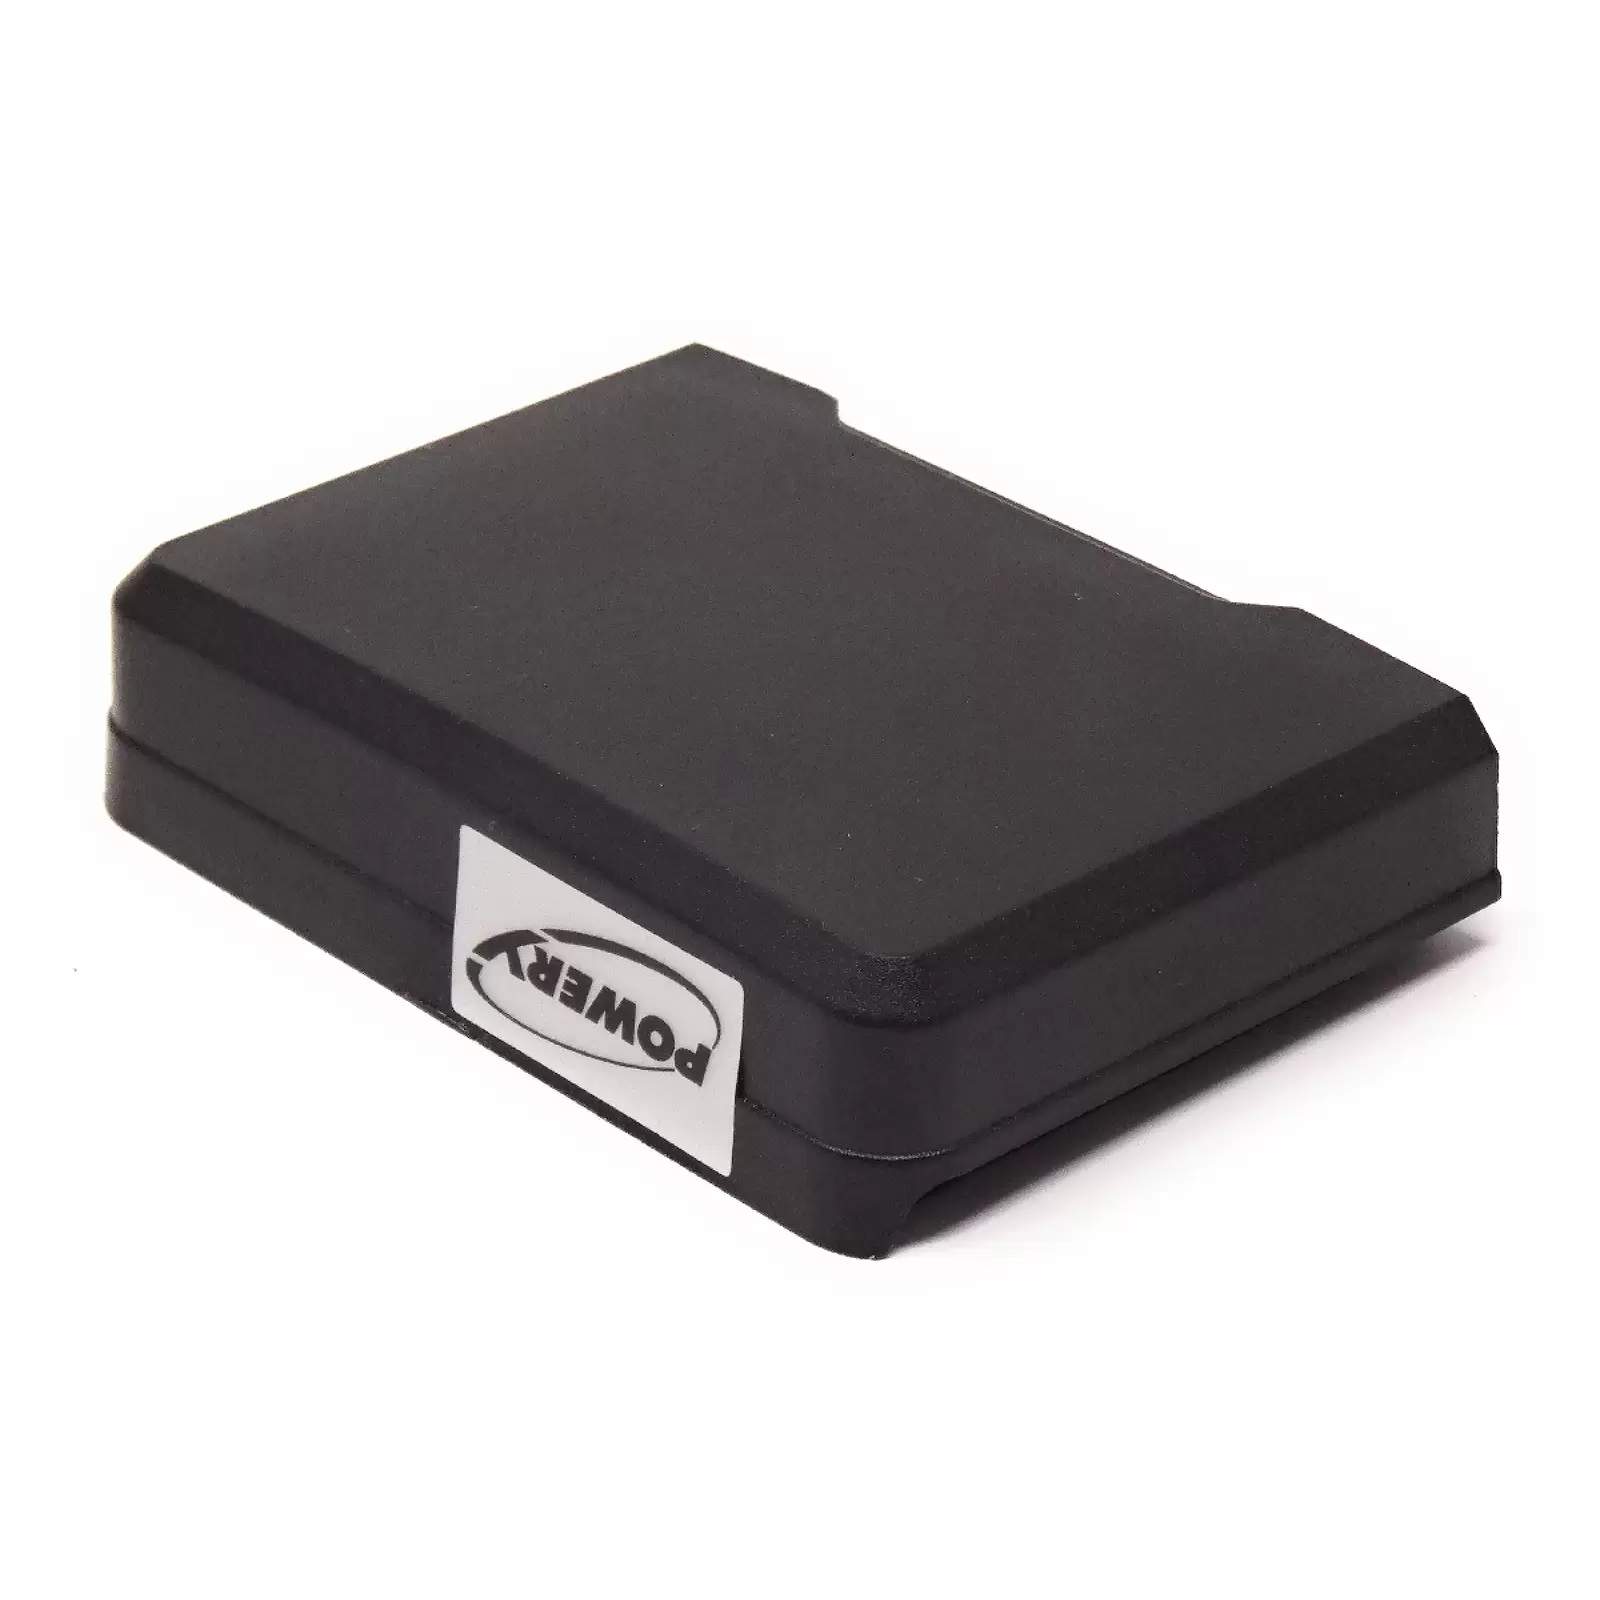 Akku kompatibel mit wireless Taschensender Sennheiser SK9000 / Typ BA 61